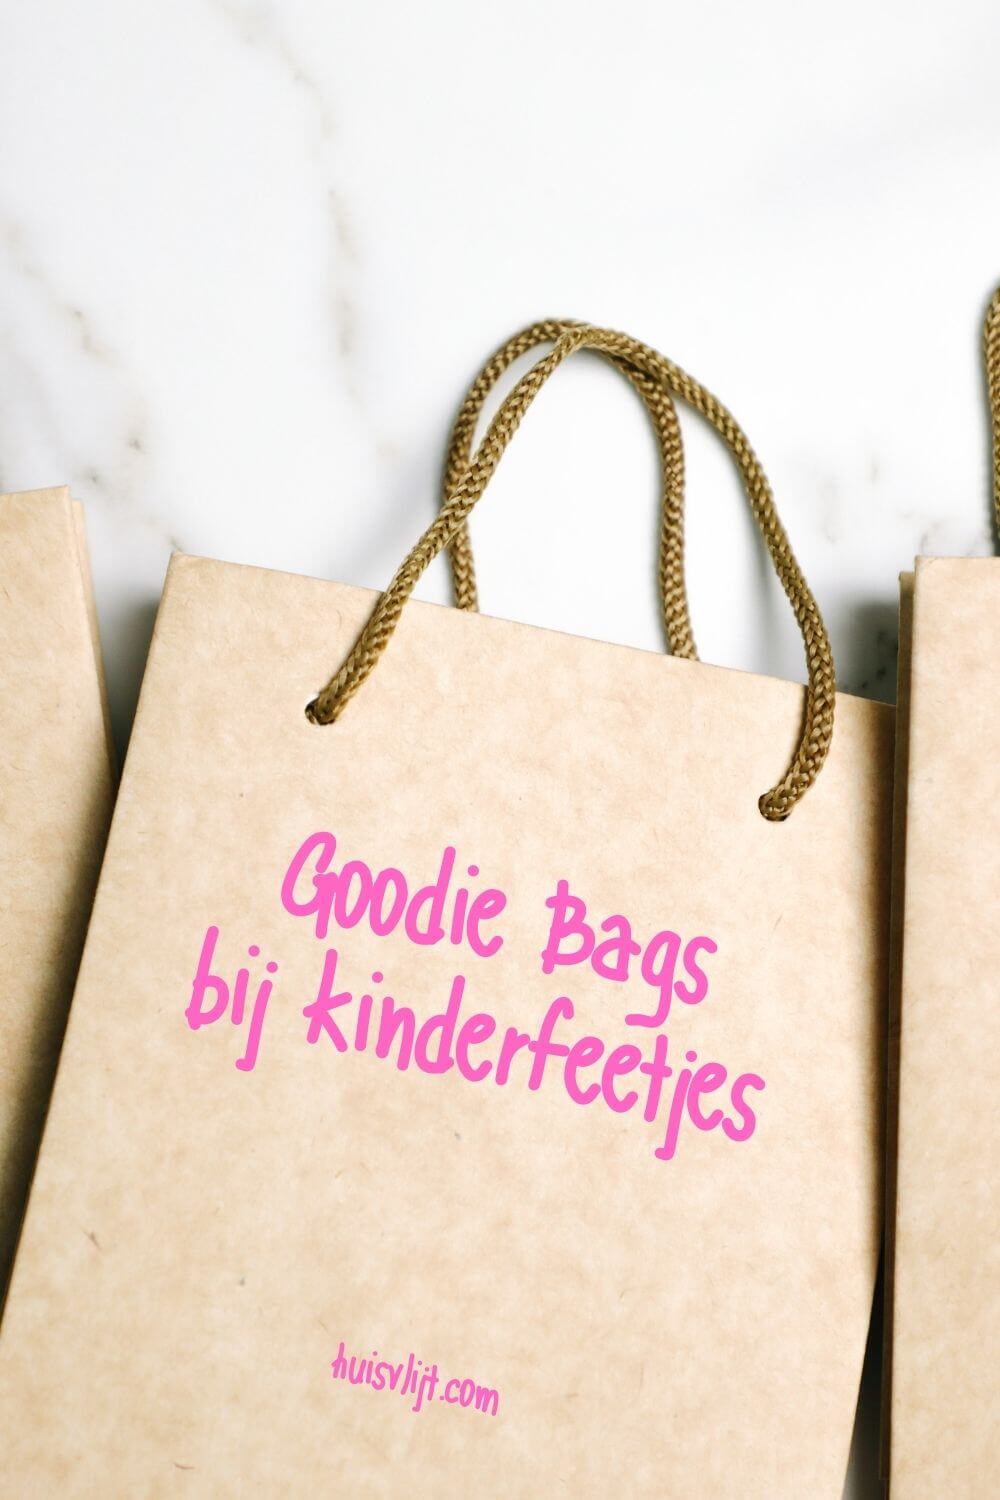 Goodiebags bij een kinderfeestje: 5 ideeën